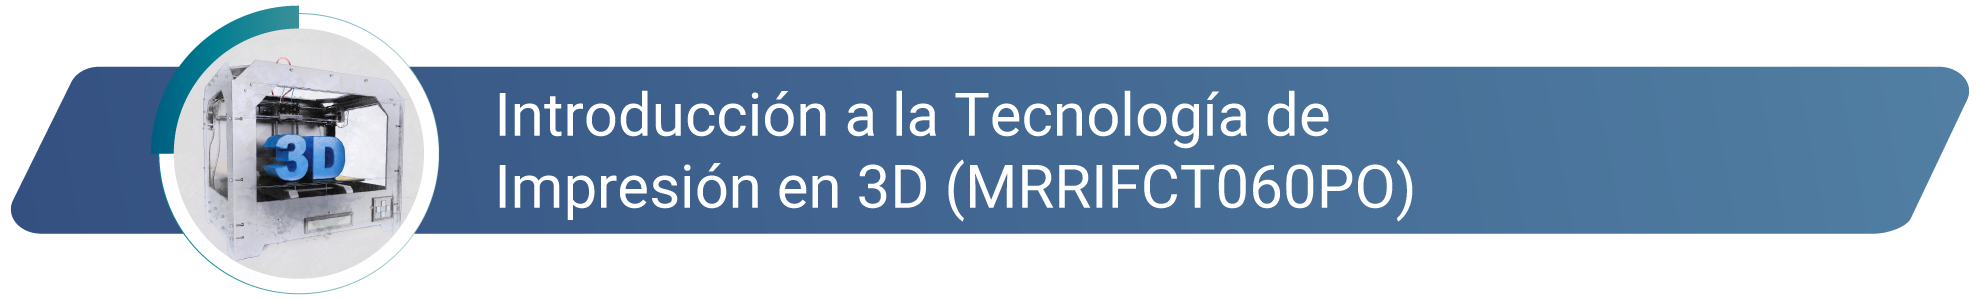 Introducción a la Tecnología de Impresión en 3D